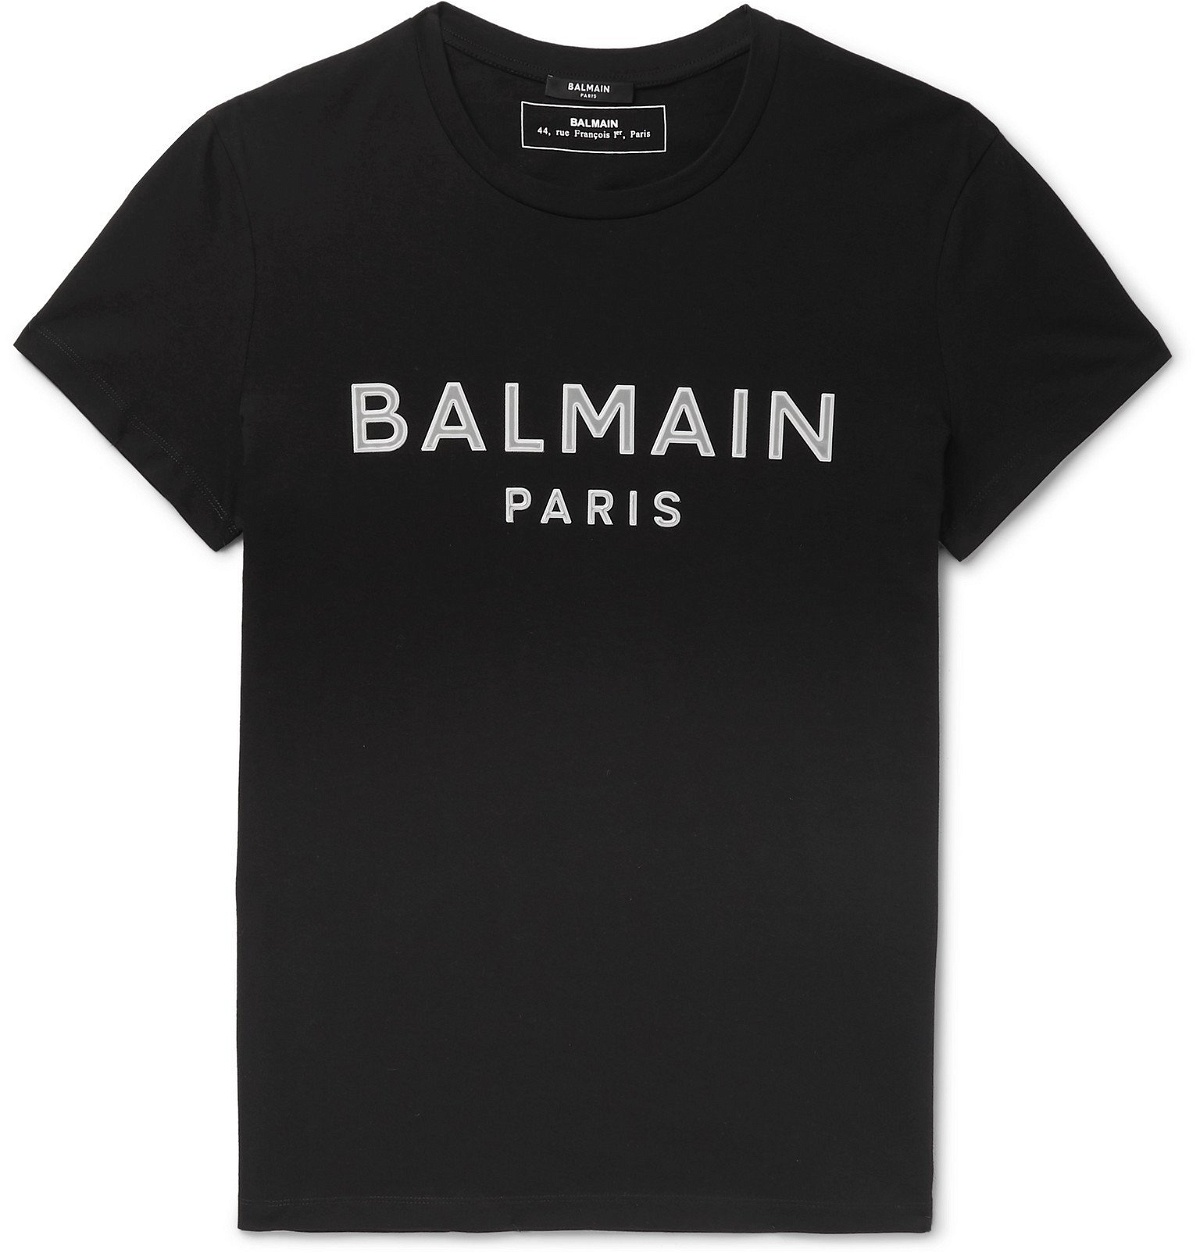 Balmain - Slim-Fit Logo-Appliquéd Cotton-Jersey T-Shirt - Black Balmain